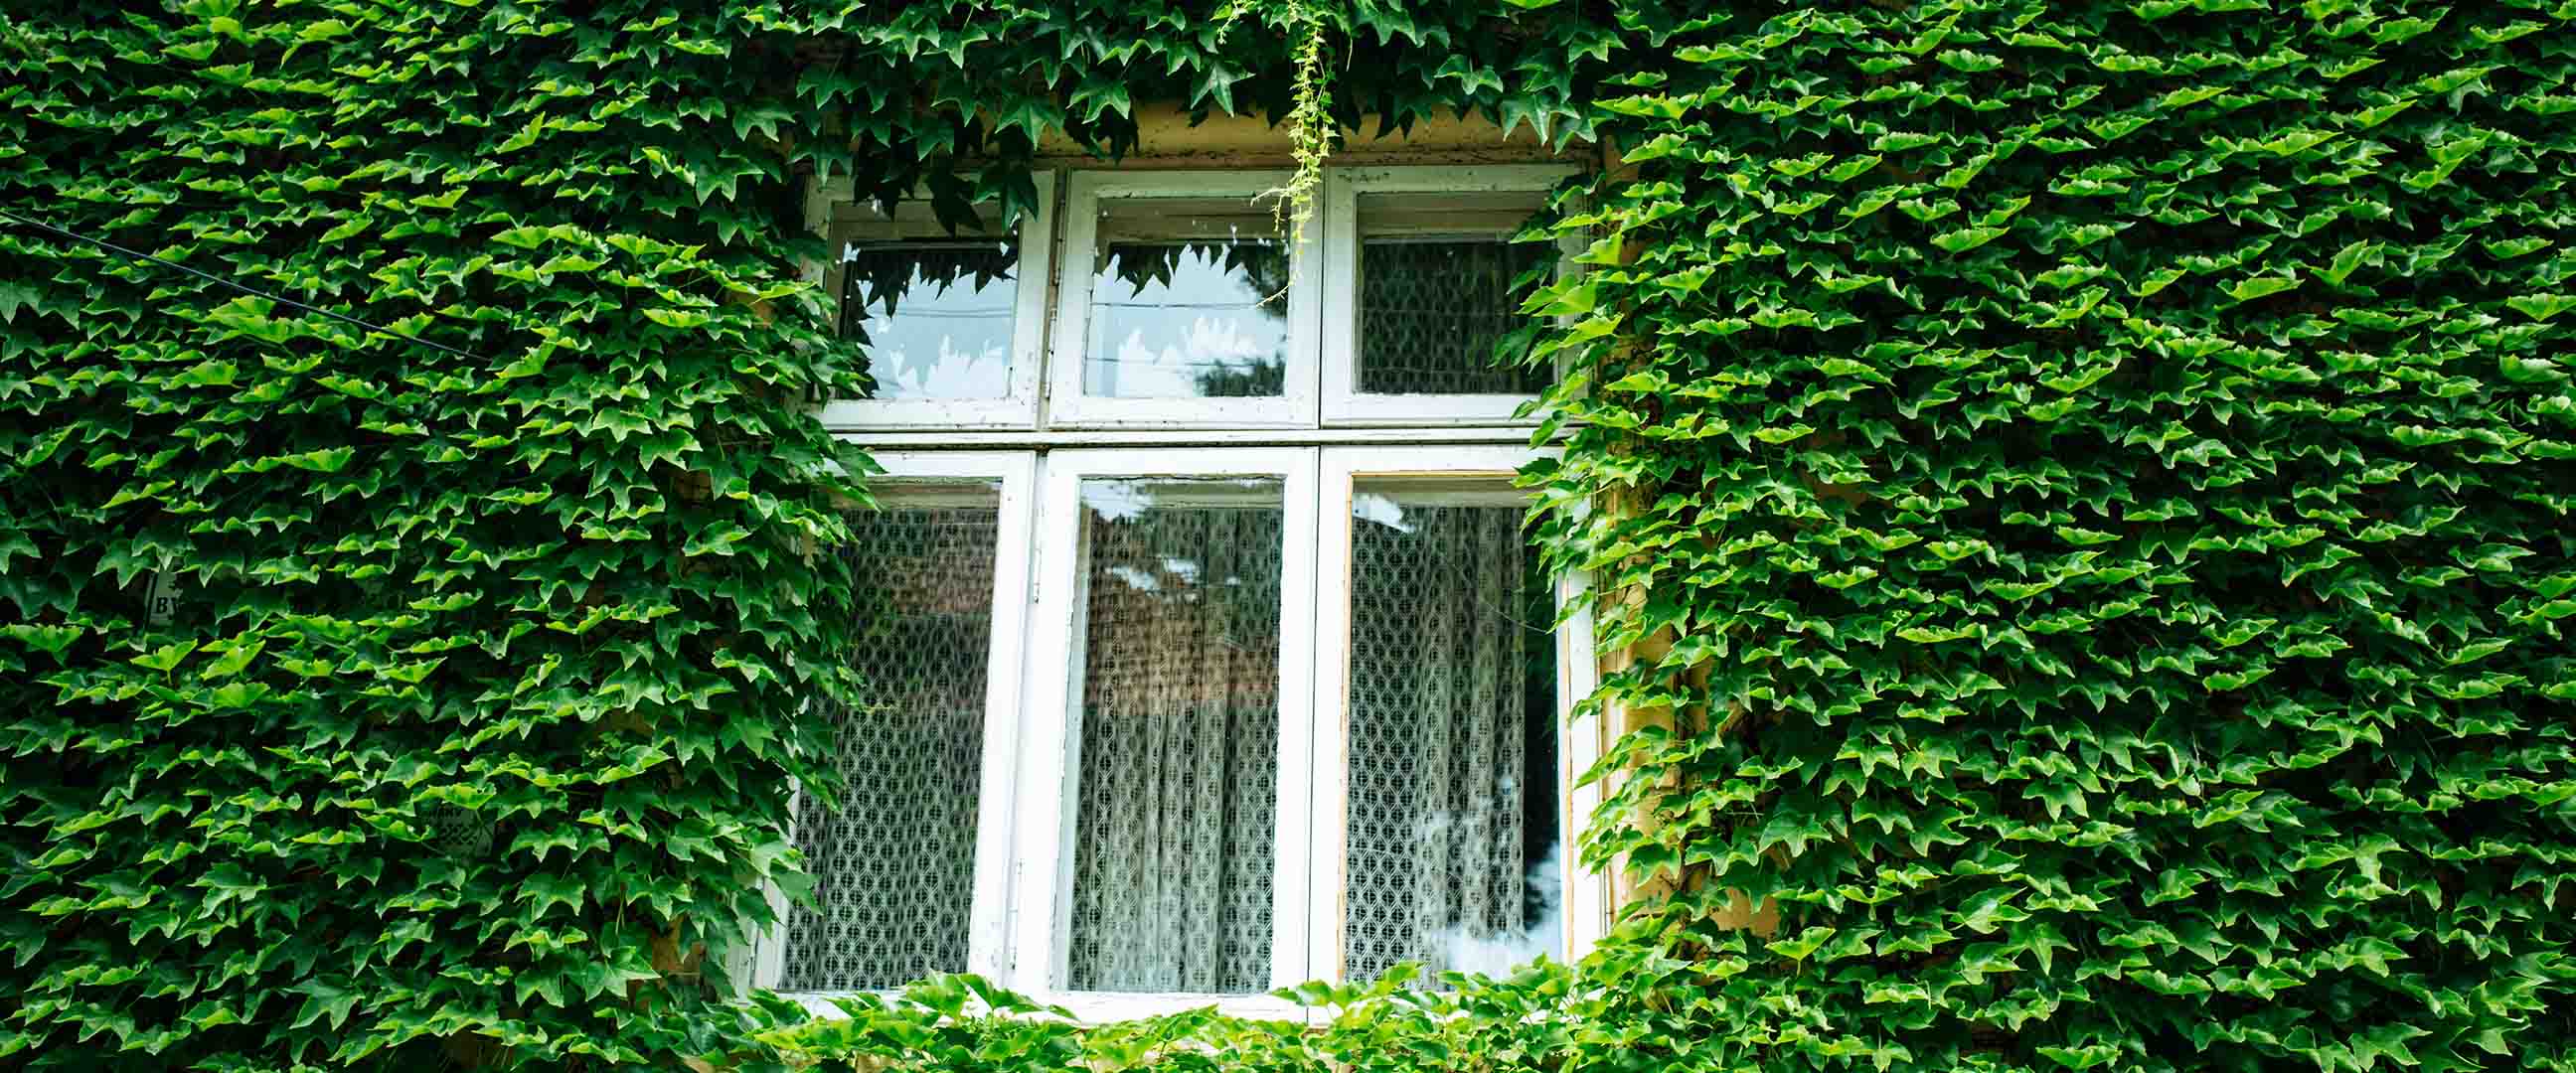 Husvägg, täckt i grönska, med fönster